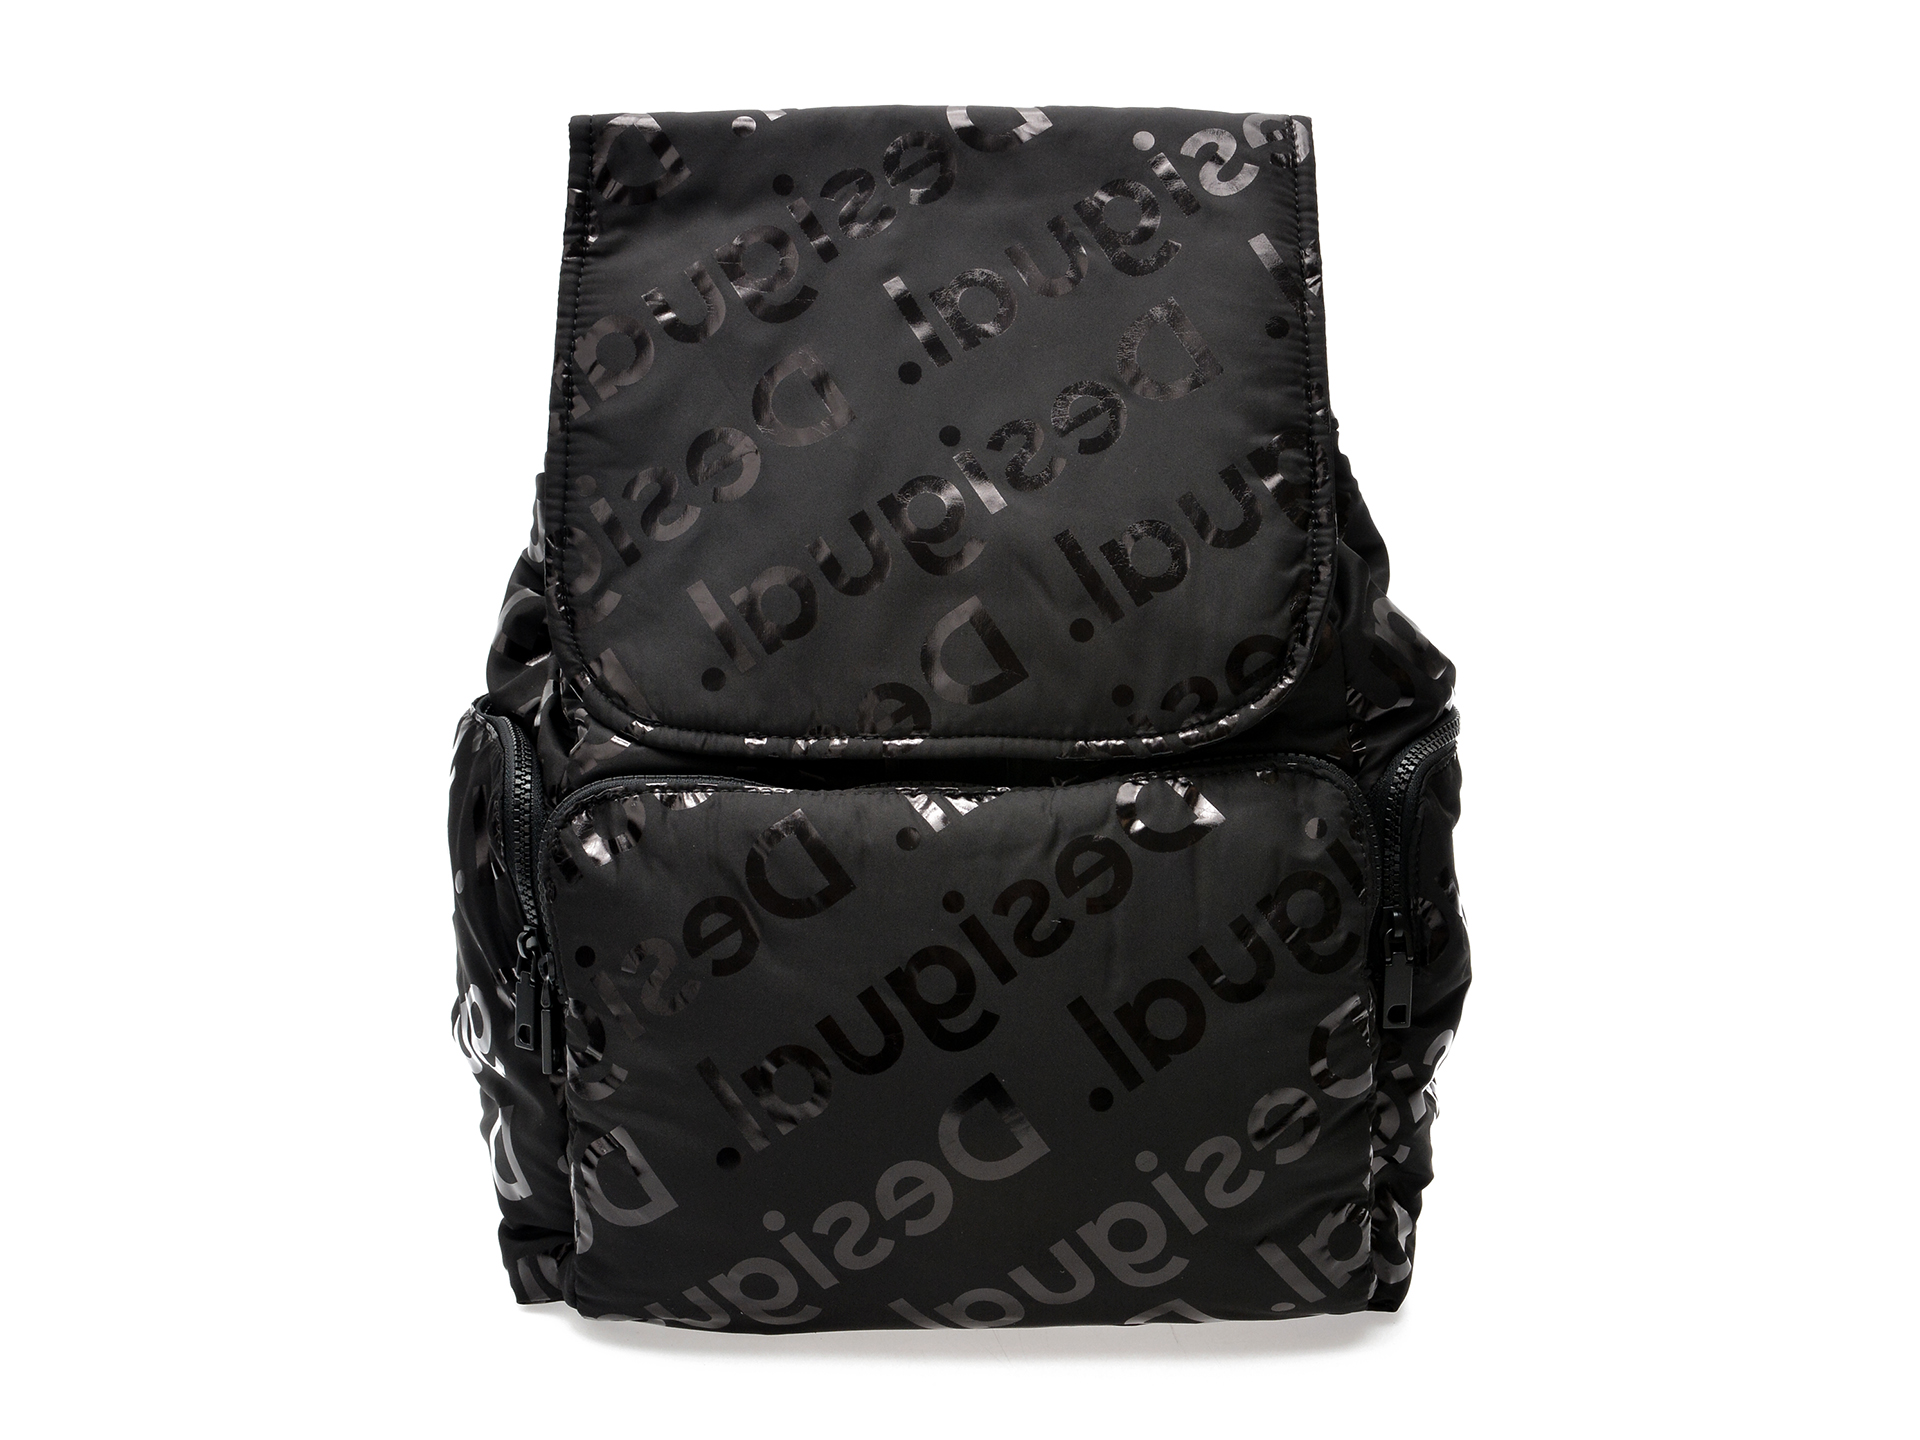 Rucsac DESIGUAL negru, WAKA05, din material textil DESIGUAL